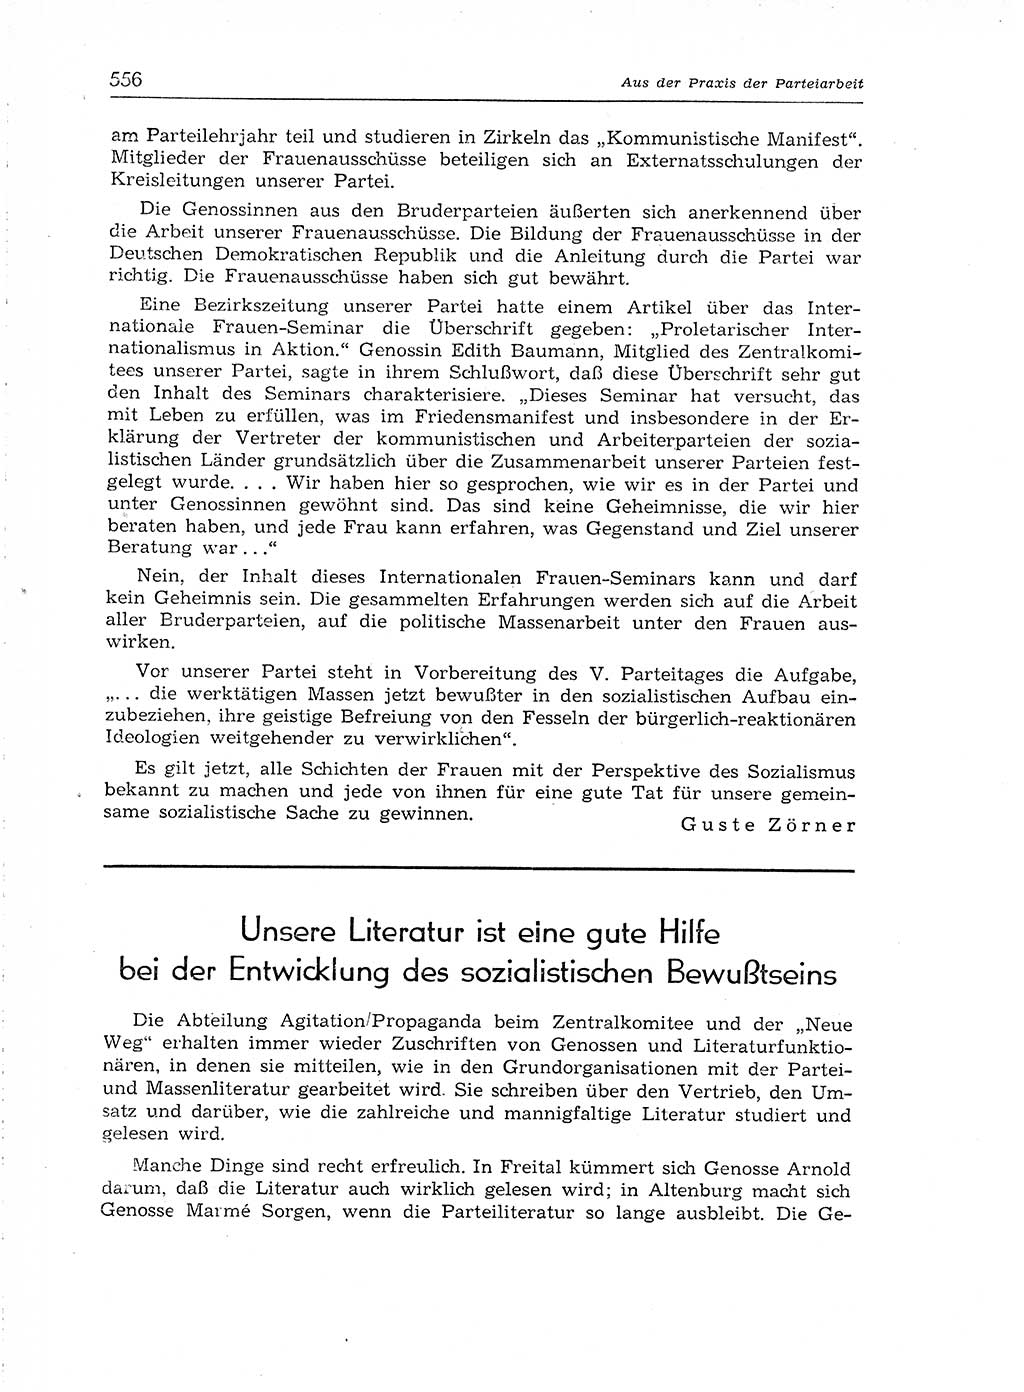 Neuer Weg (NW), Organ des Zentralkomitees (ZK) der SED (Sozialistische Einheitspartei Deutschlands) für Fragen des Parteiaufbaus und des Parteilebens, [Deutsche Demokratische Republik (DDR)] 13. Jahrgang 1958, Seite 556 (NW ZK SED DDR 1958, S. 556)